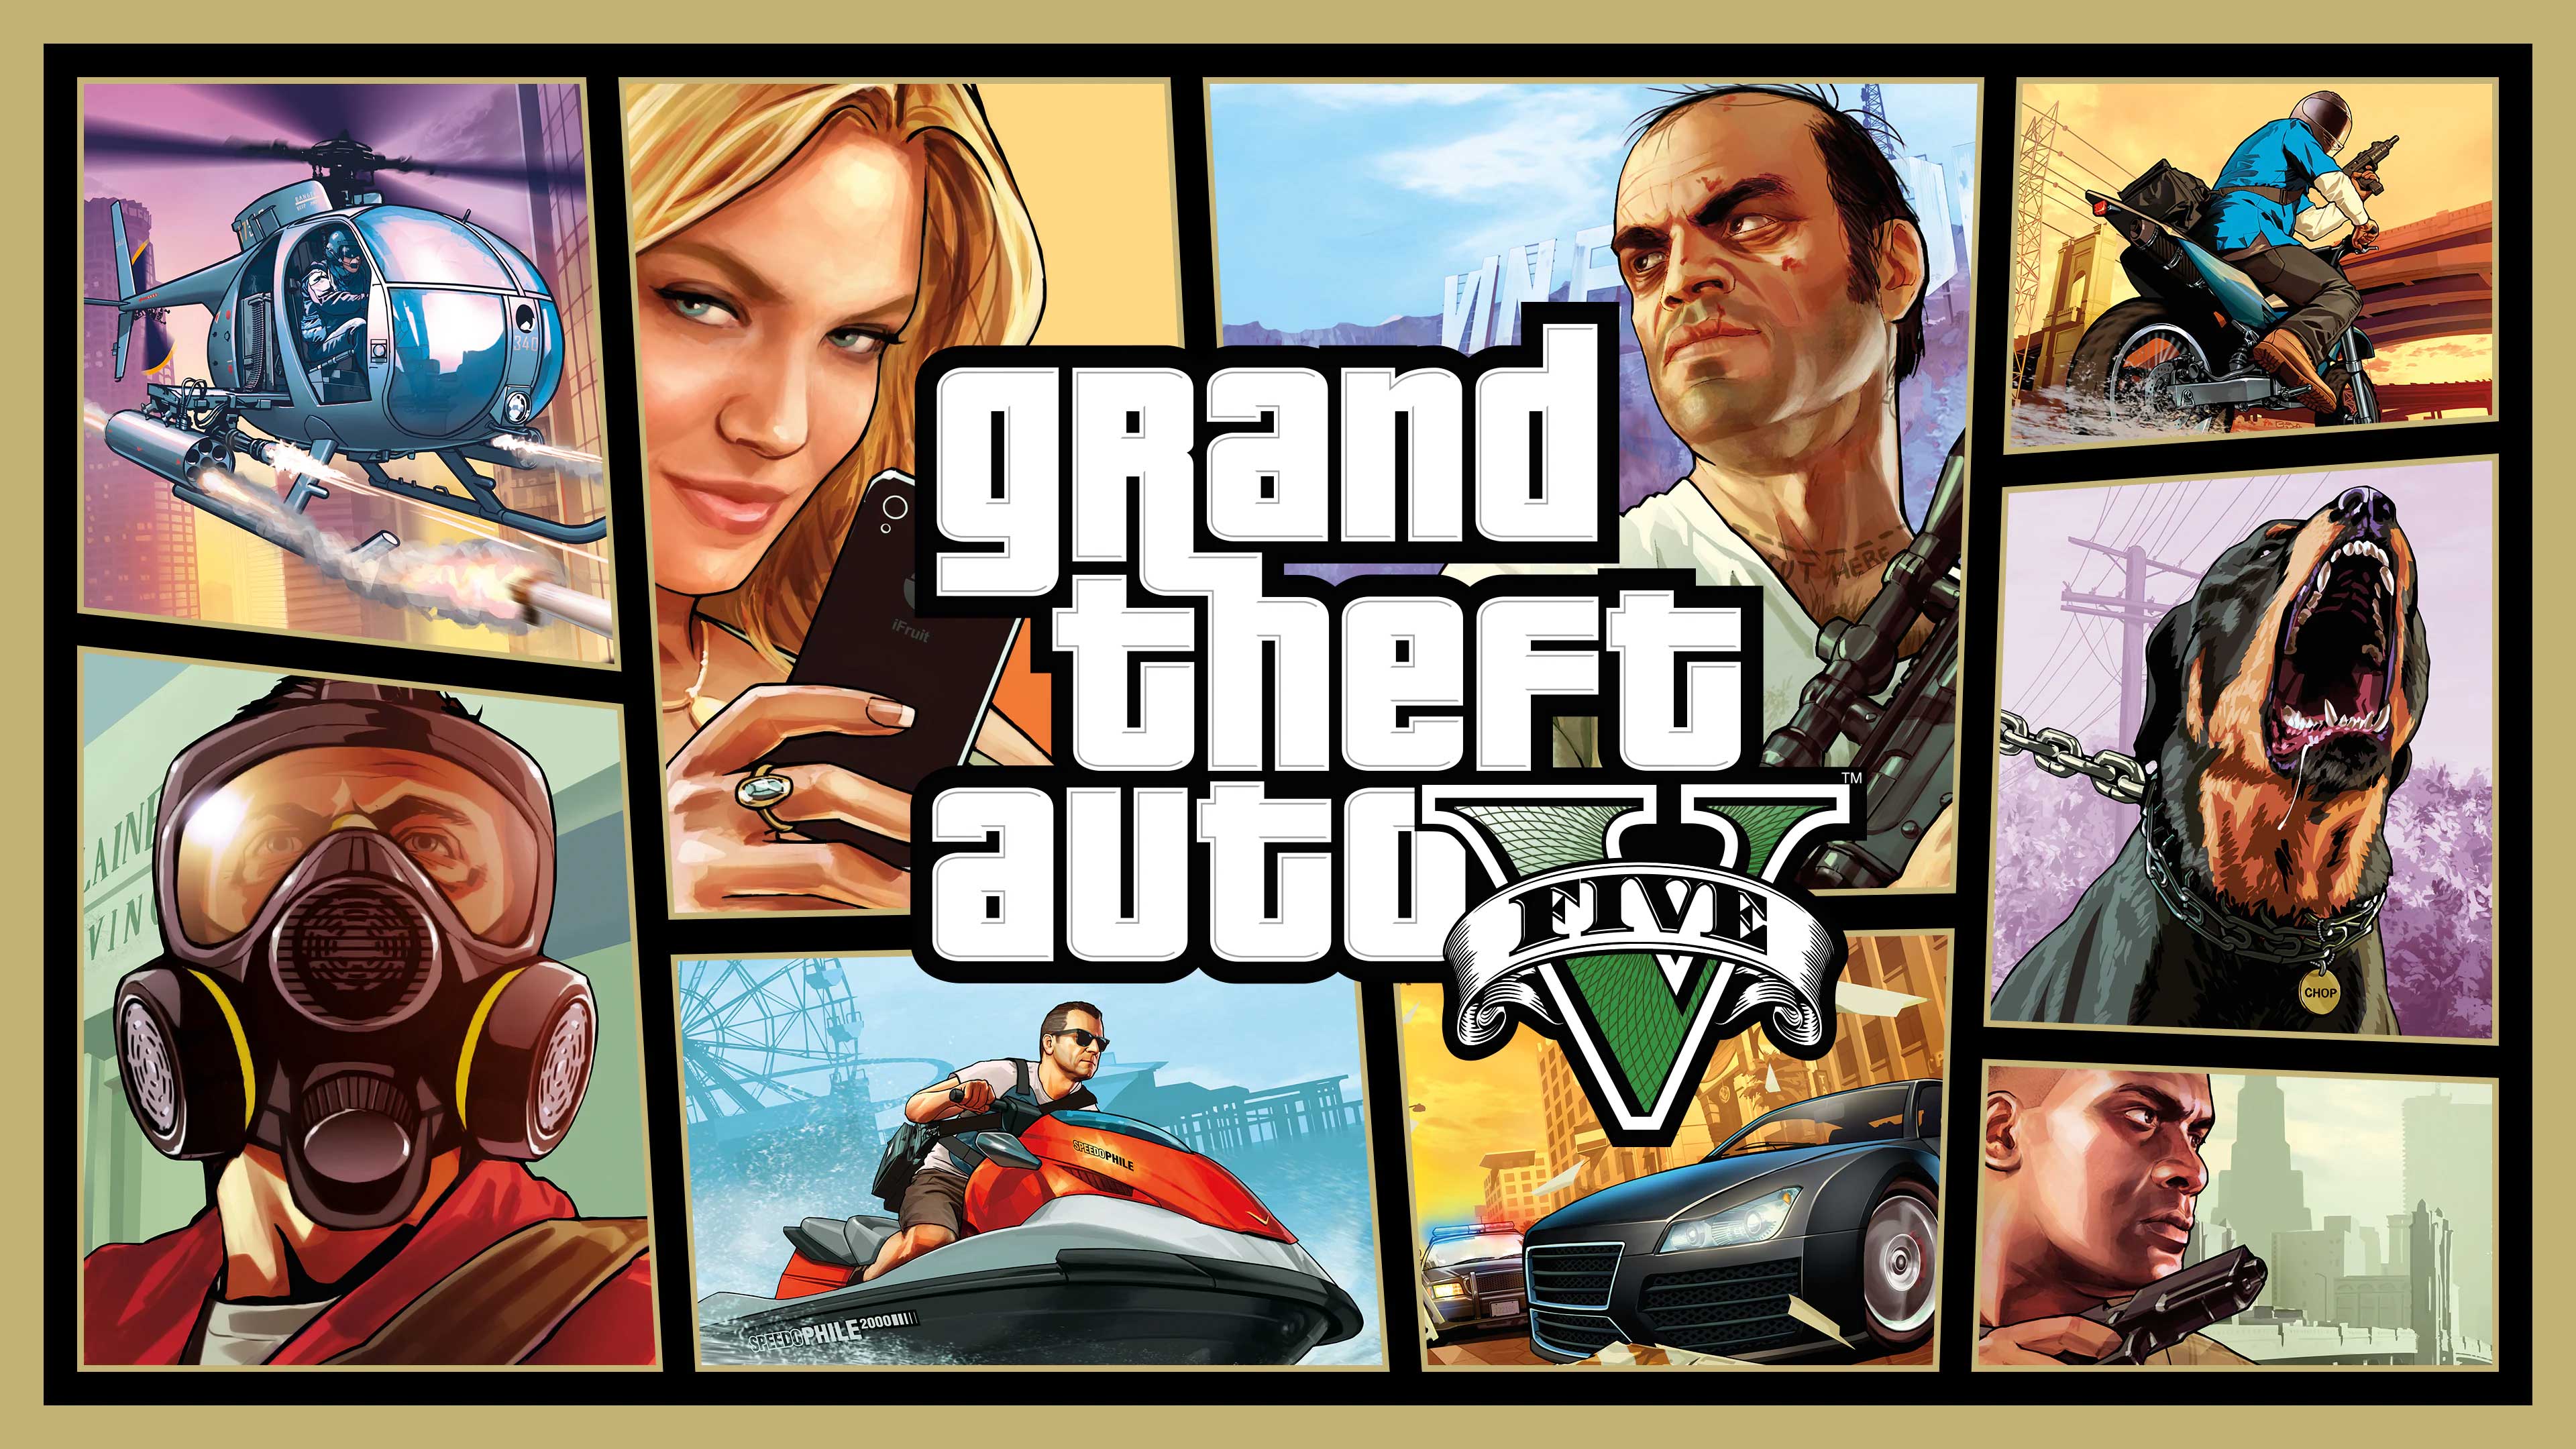 Grand Theft Auto V, The Gamer Bro, thegamerbro.com